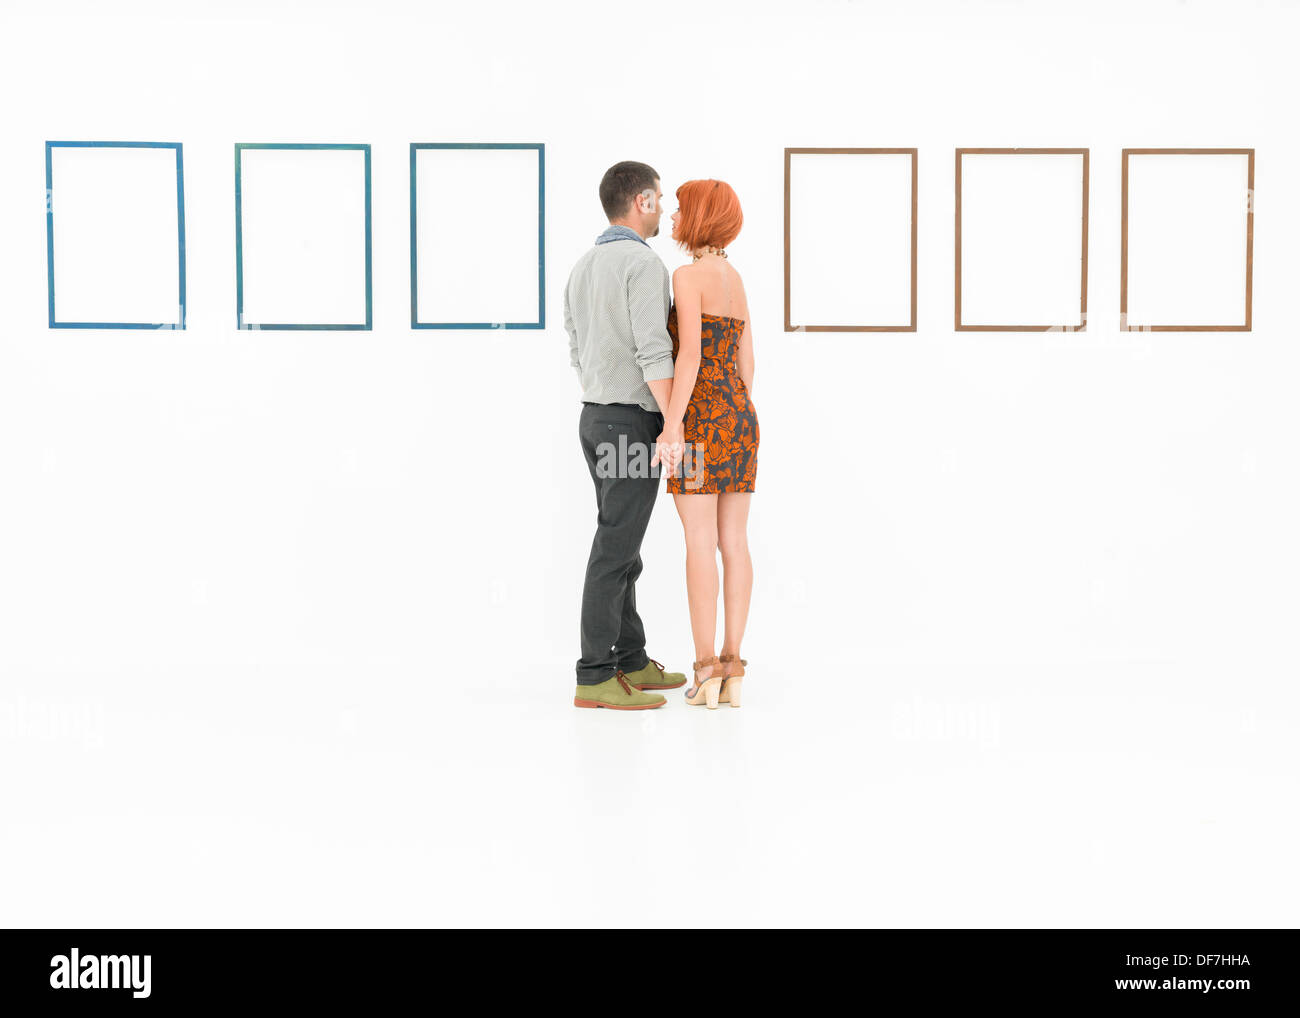 L uomo e la donna tenendo le mani nella parte anteriore del vuoto di fotogrammi visualizzati su pareti bianche Foto Stock